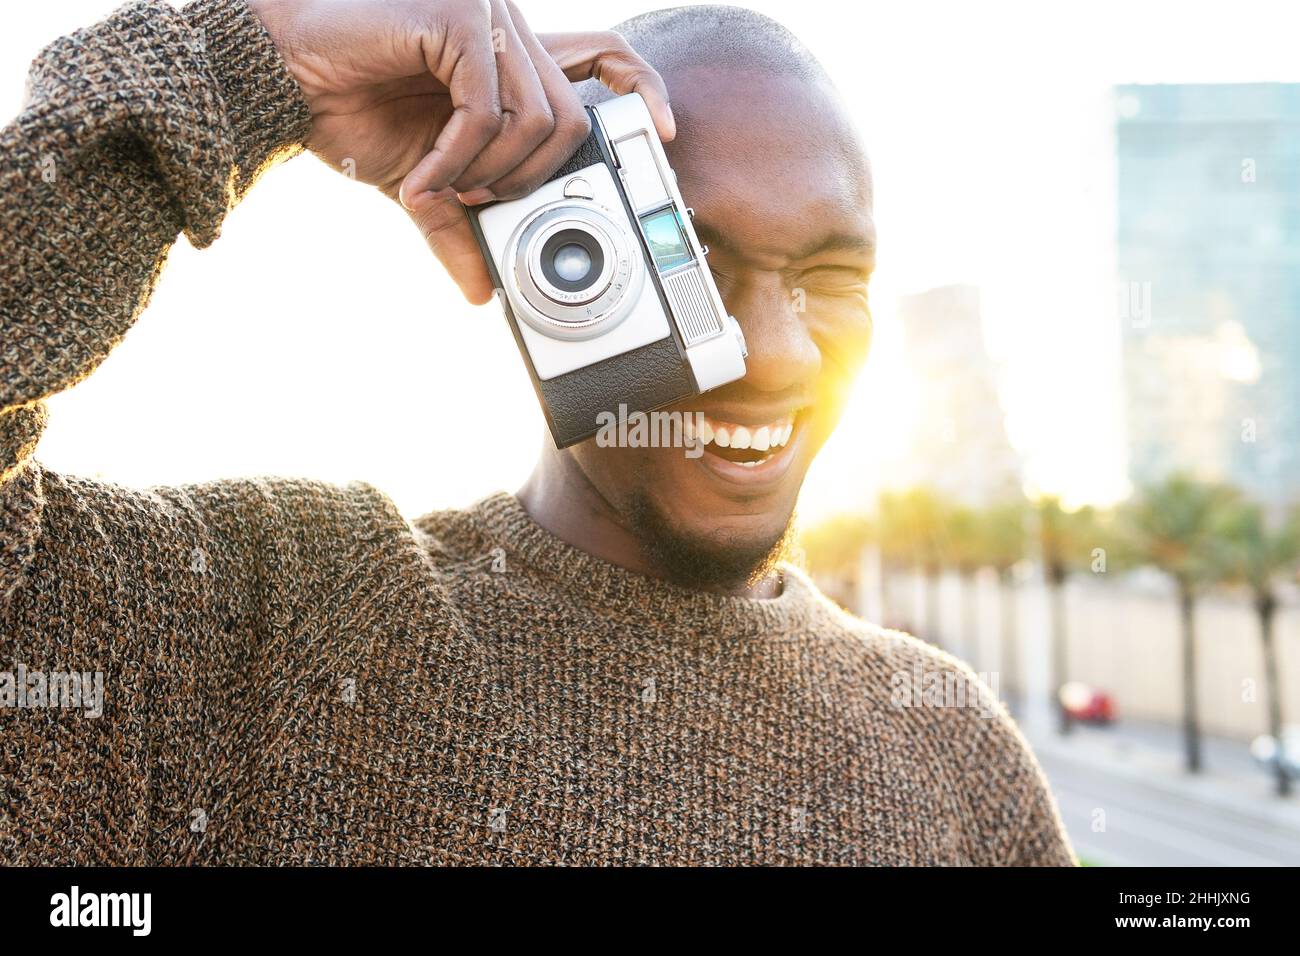 Fokussierter, fröhlicher, kahlköpfiger afroamerikanischer Fotograf, der mit einer Fotokamera fotografiert, während er auf einem Rasen in der Stadt mit Bäumen steht Stockfoto